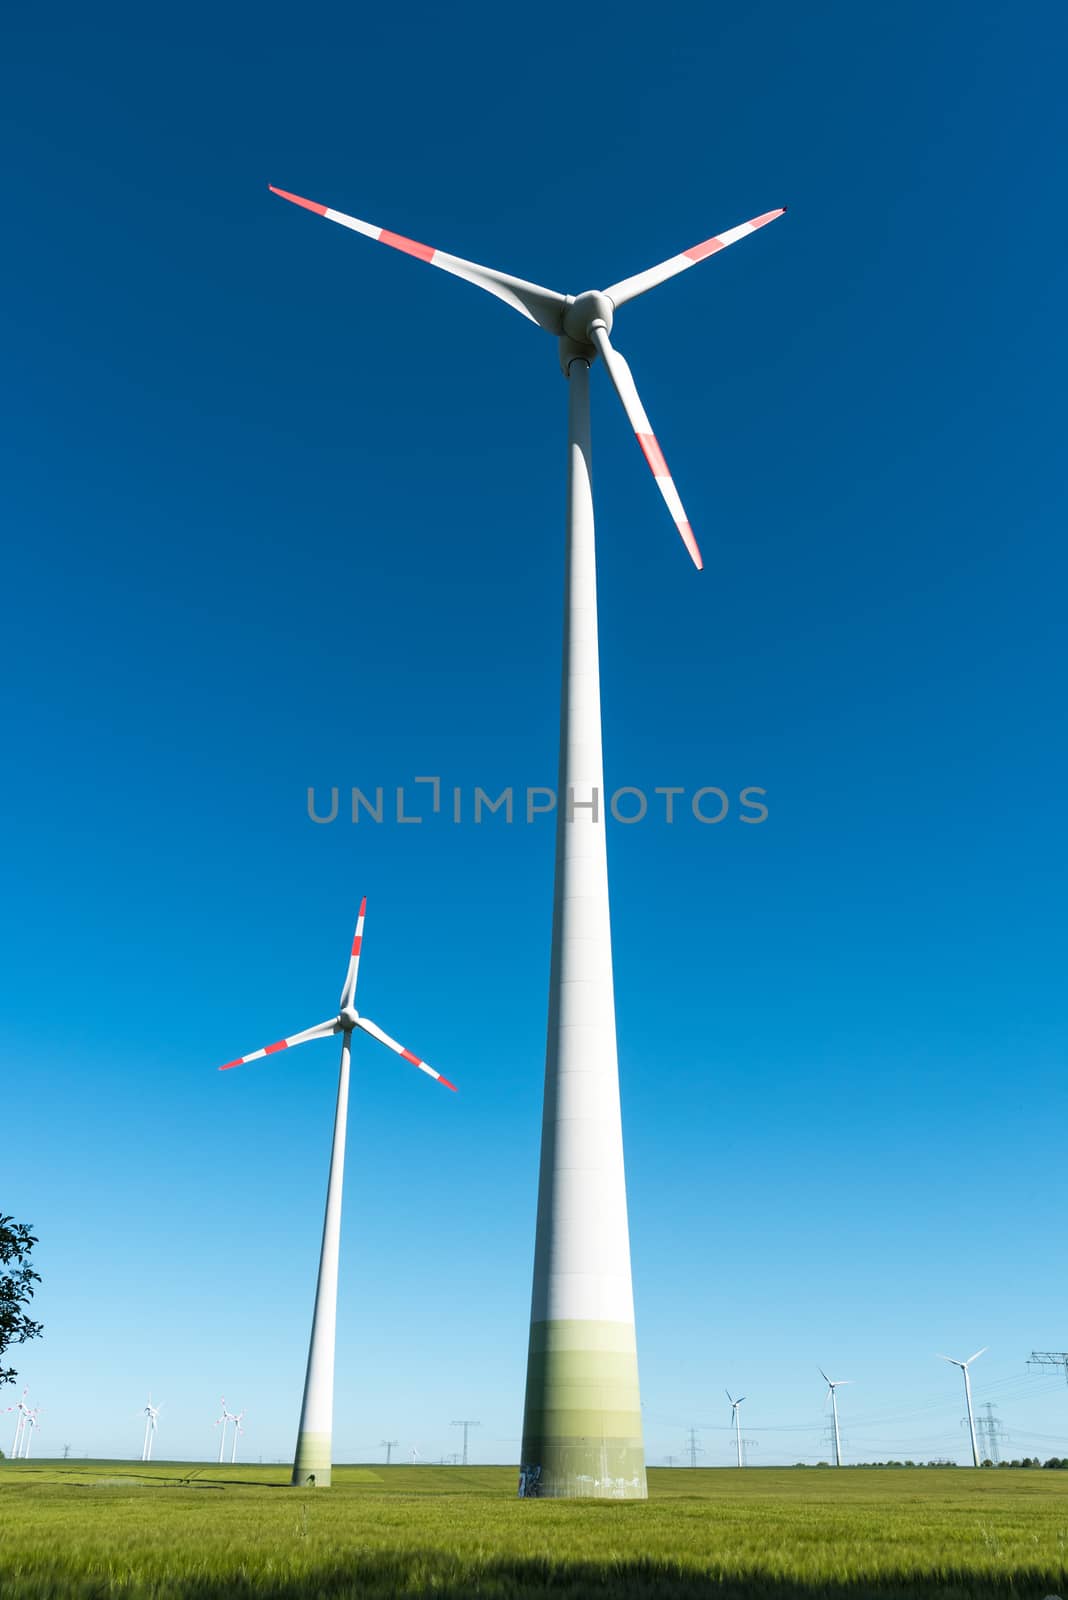 Windmill-powered plant by elxeneize